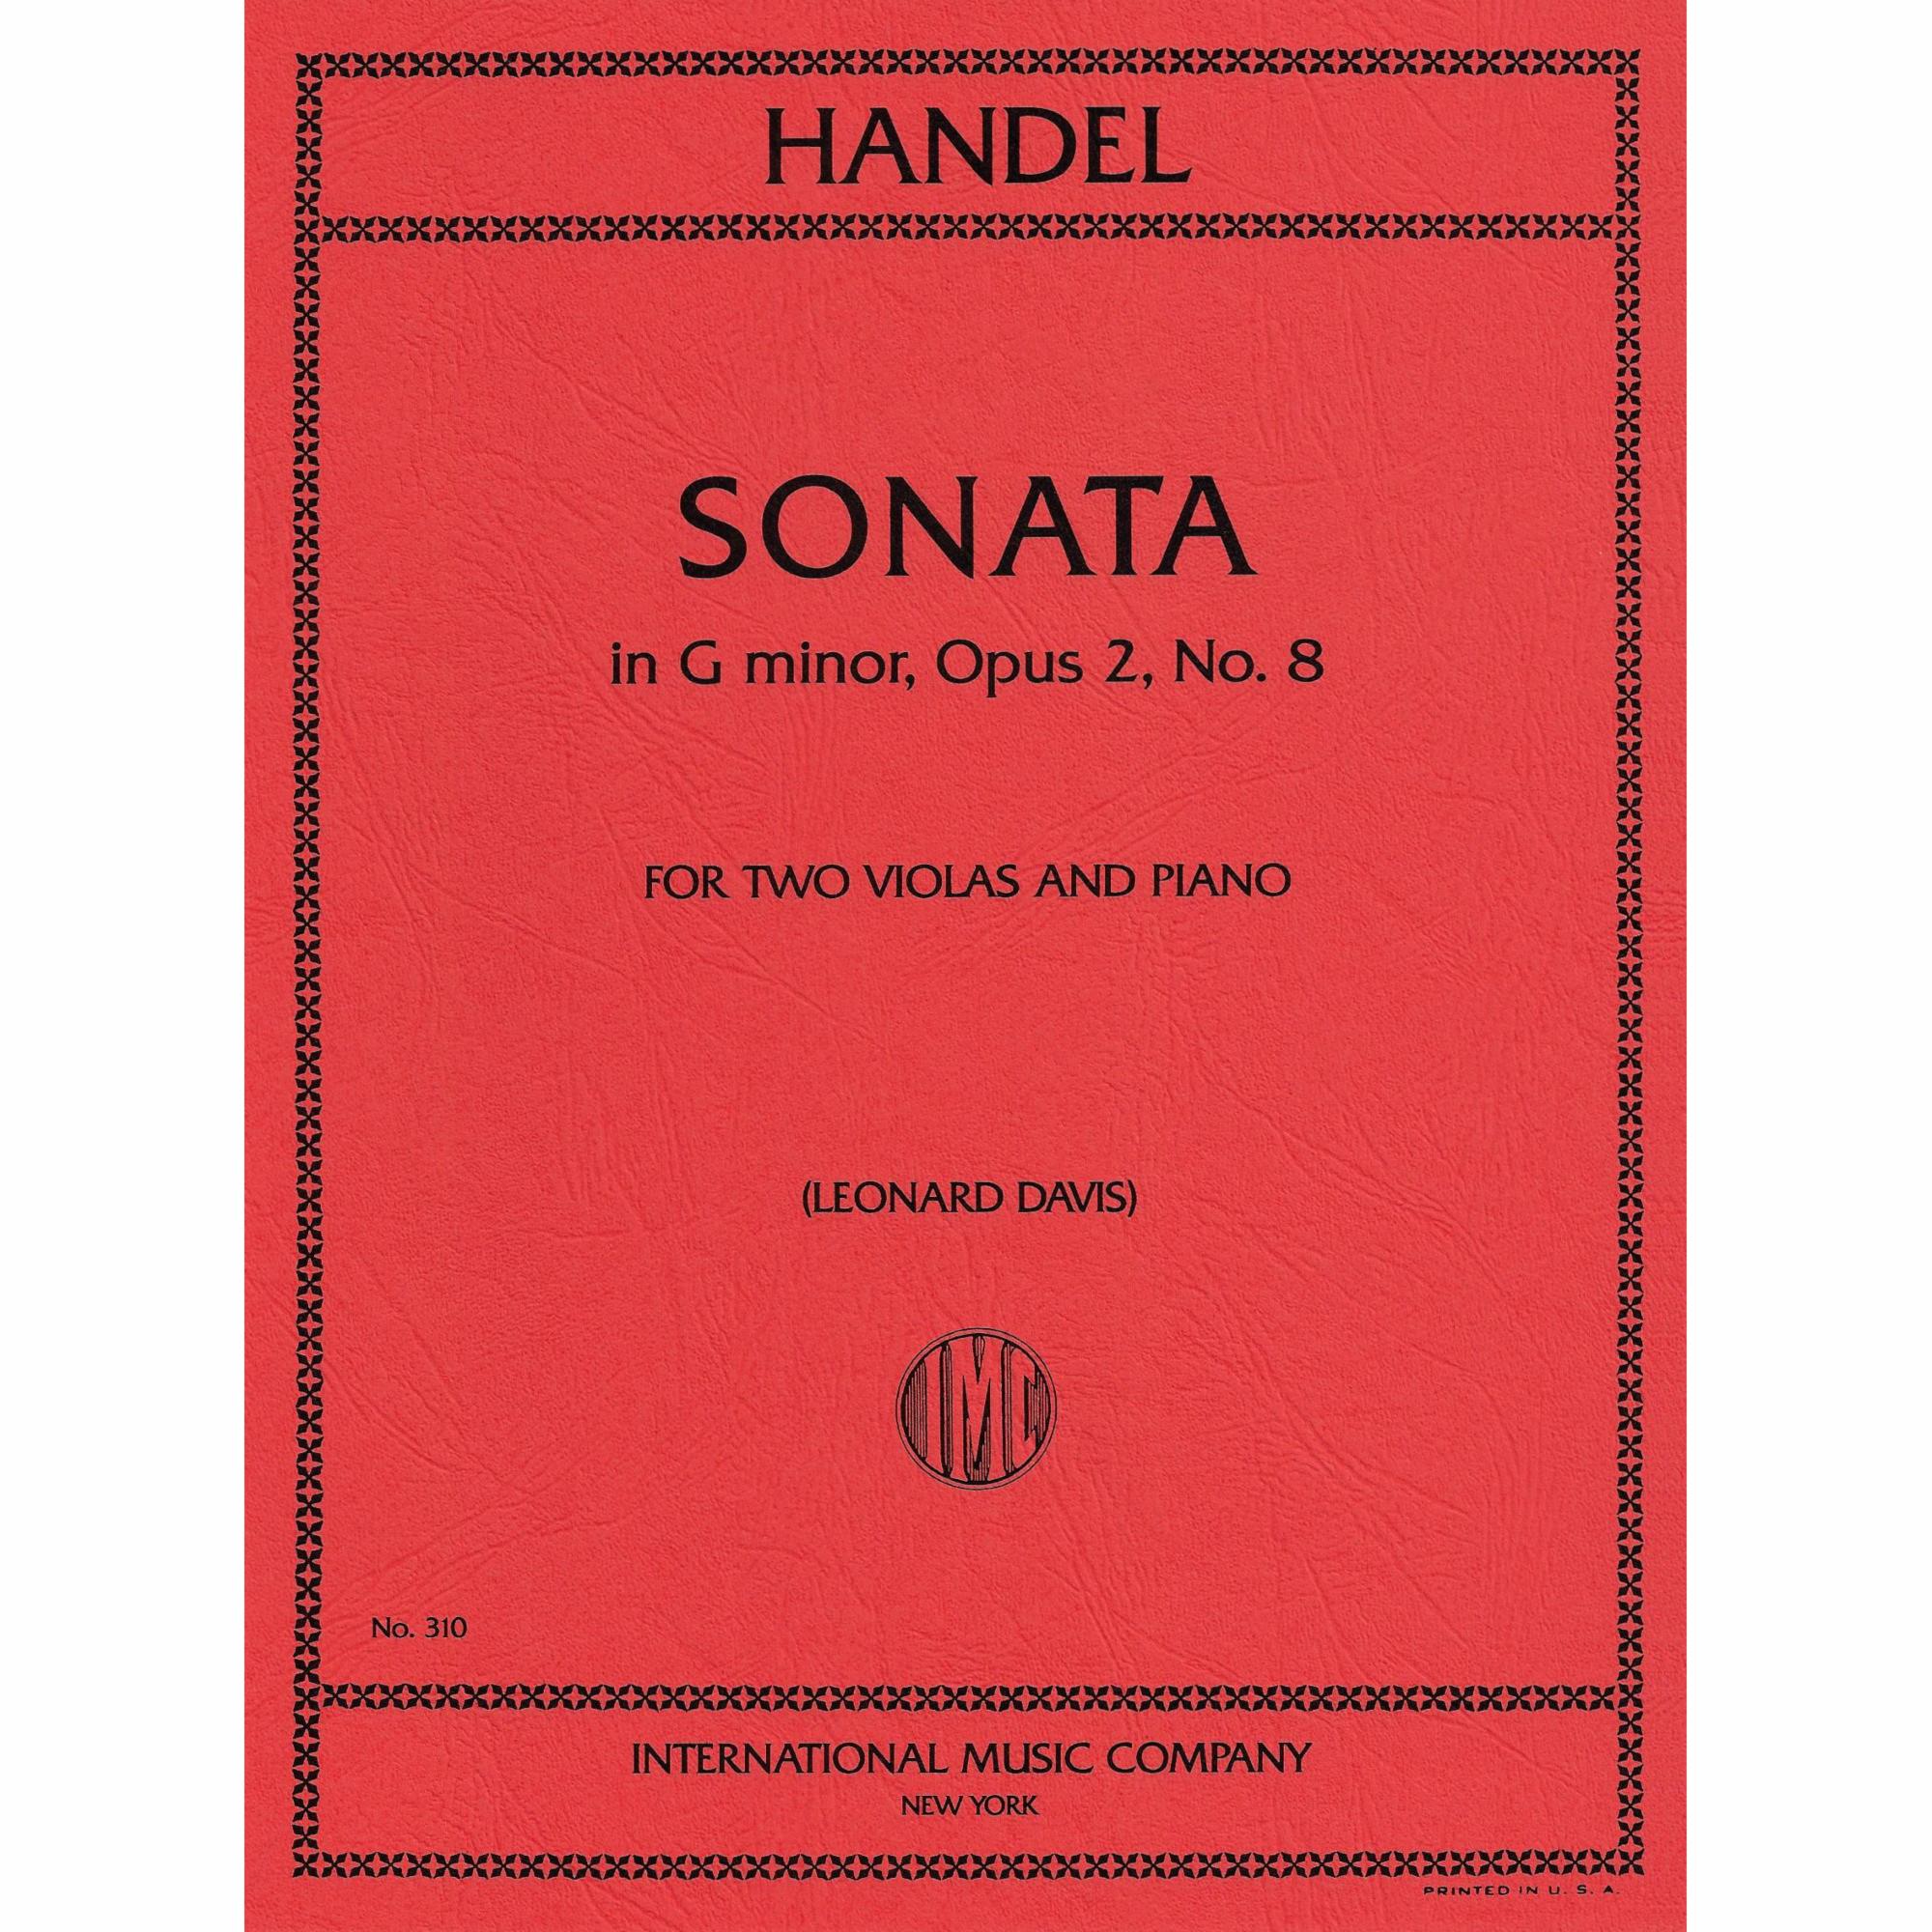 Handel -- Sonata in G Minor, Op. 2, No. 8 for Two Violas and Piano